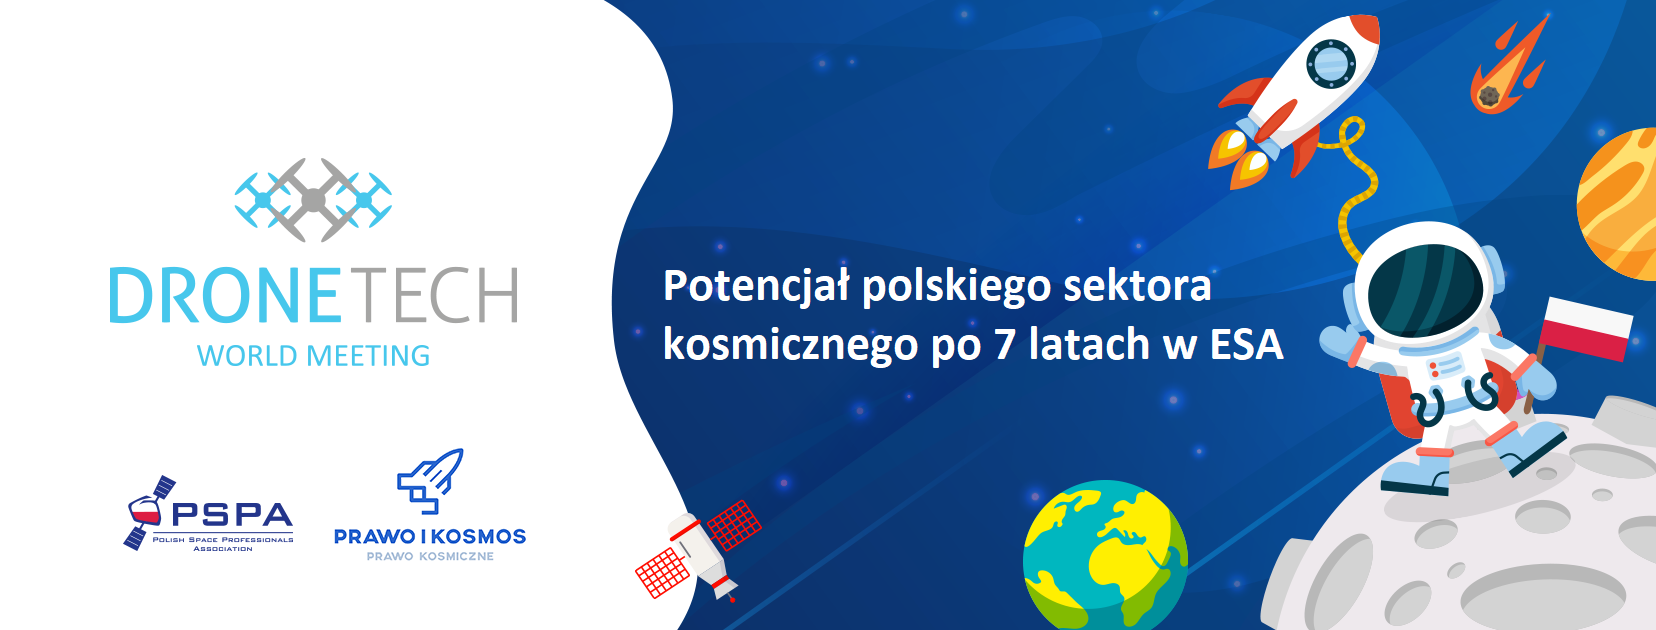 Międzynarodowa konferencja nukowo-biznesowa pn. "DroneTech World Meeting" w Toruniu